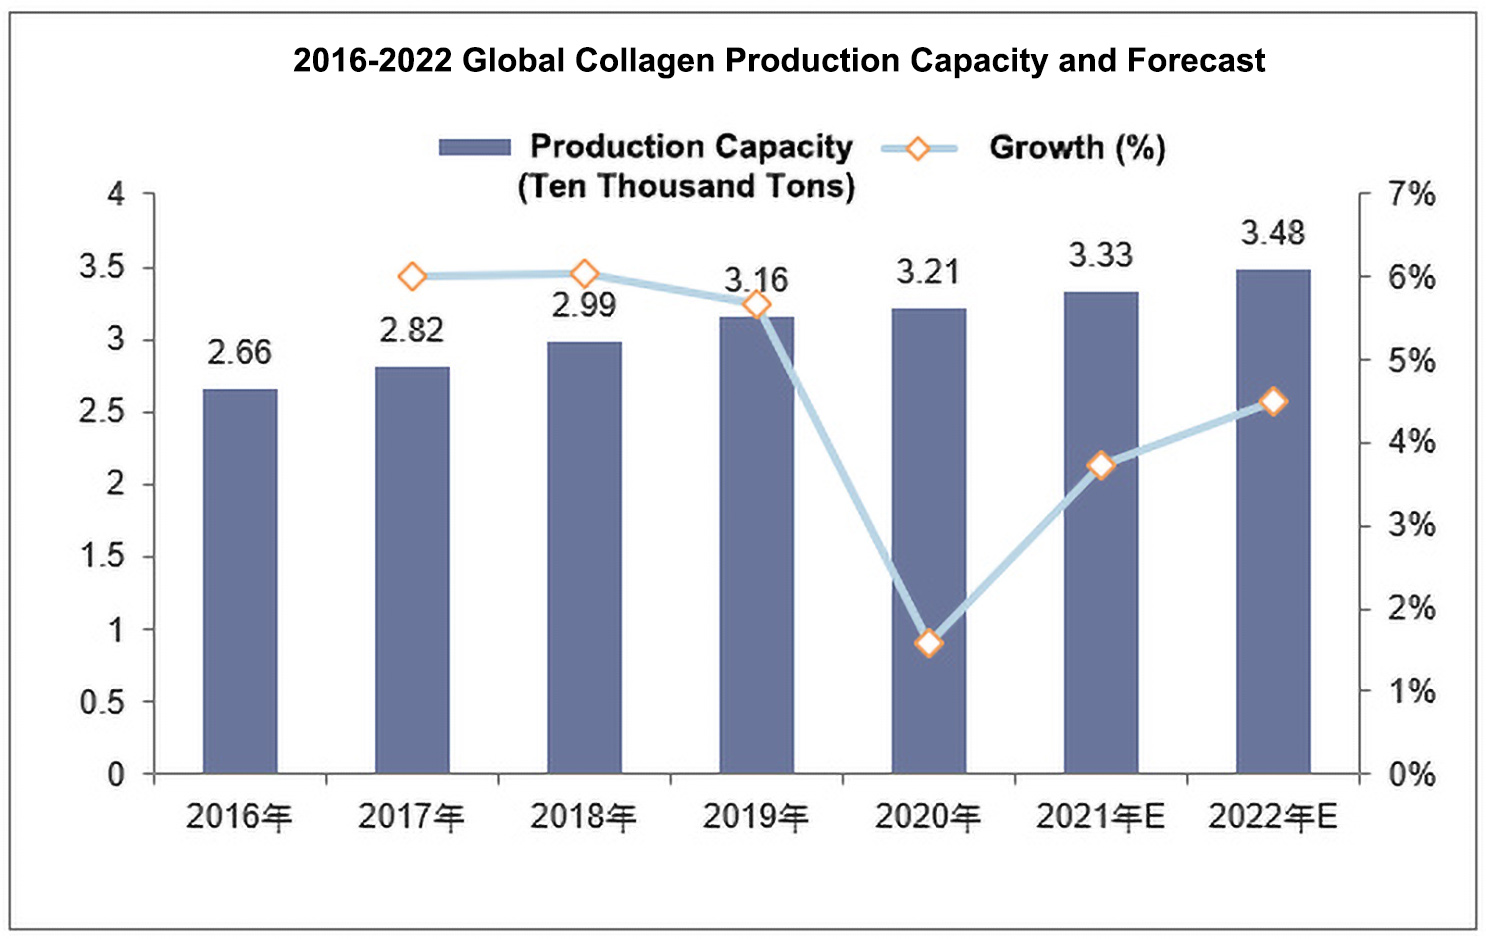 Prospect Report fan Global Collagen Industry Development Status 2022-2028